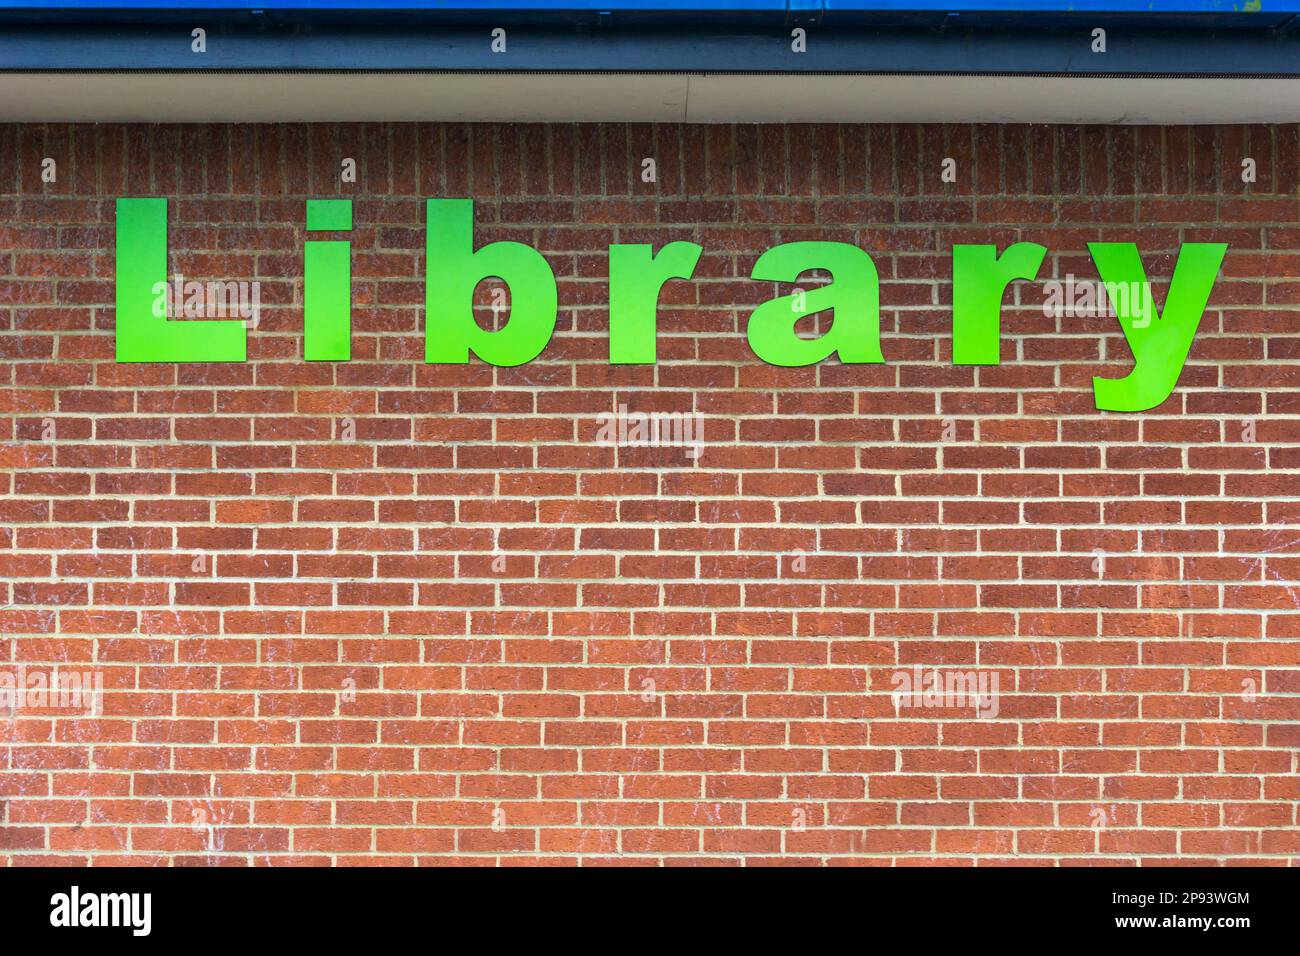 Das Wort Bibliothek in großen grünen Buchstaben auf der Ziegelwand einer öffentlichen Bibliothek. Stockfoto